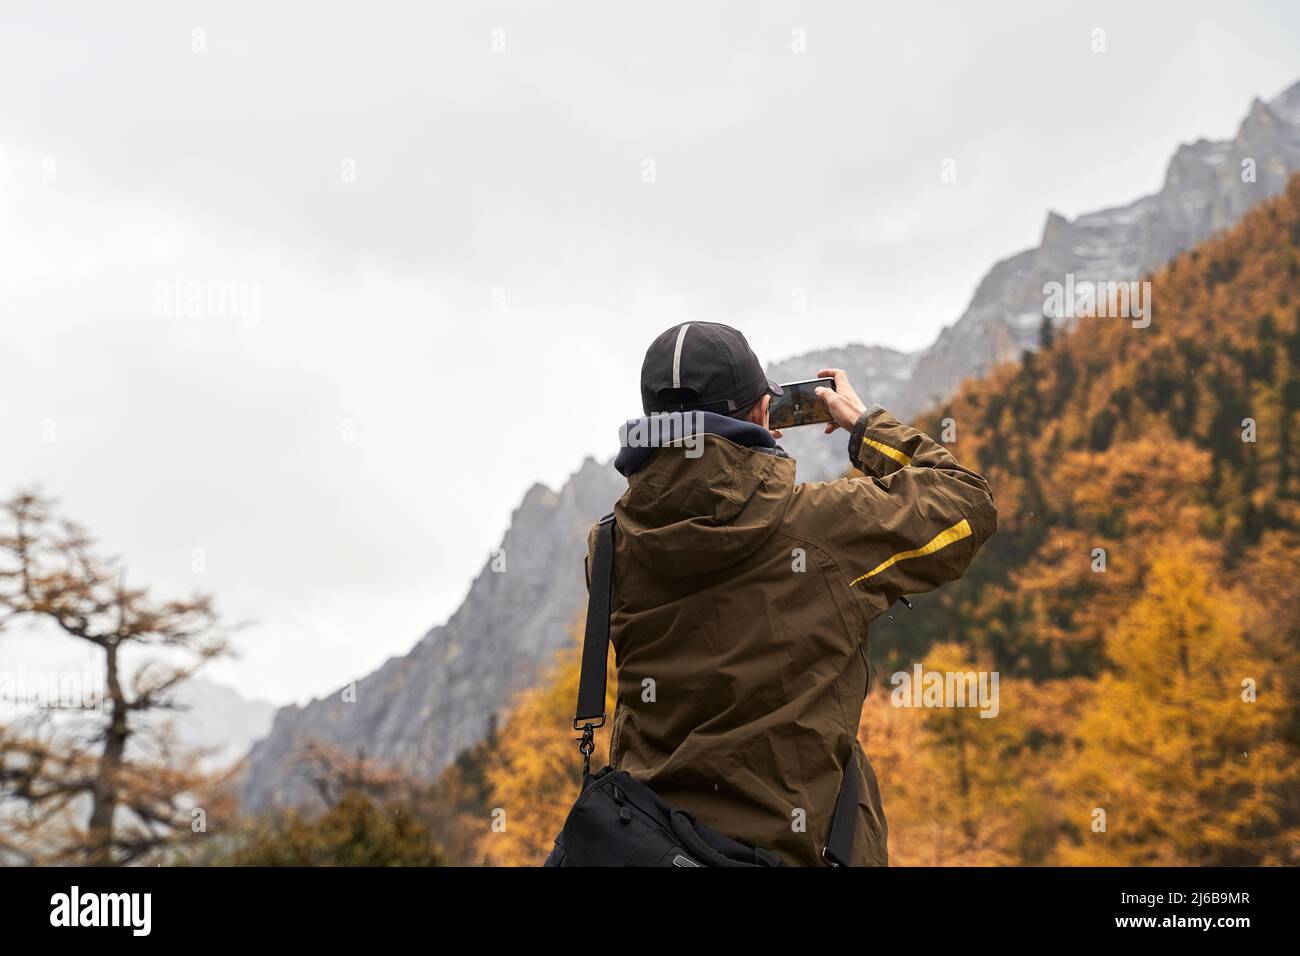 Rückansicht eines asiatischen männlichen Touristen, der mit dem Handy ein Landschaftsfoto von Berg- und Herbstlaub gemacht hat Stockfoto